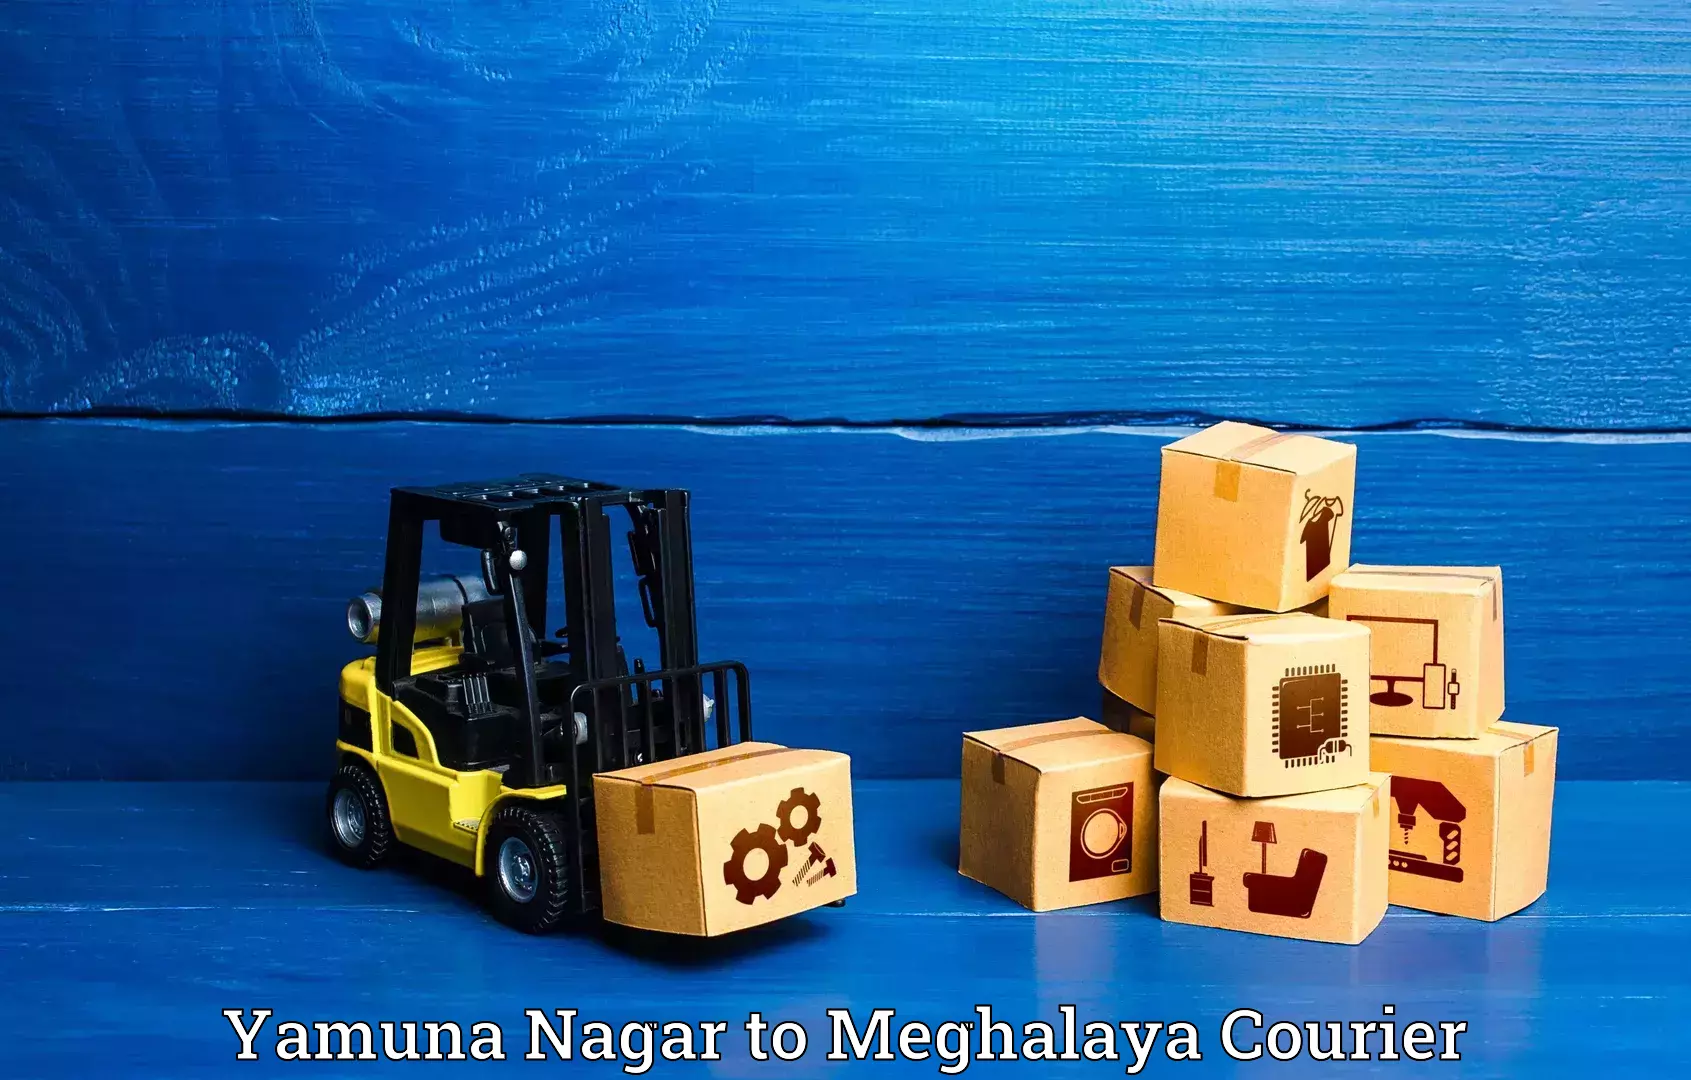 Luggage delivery app Yamuna Nagar to Shillong